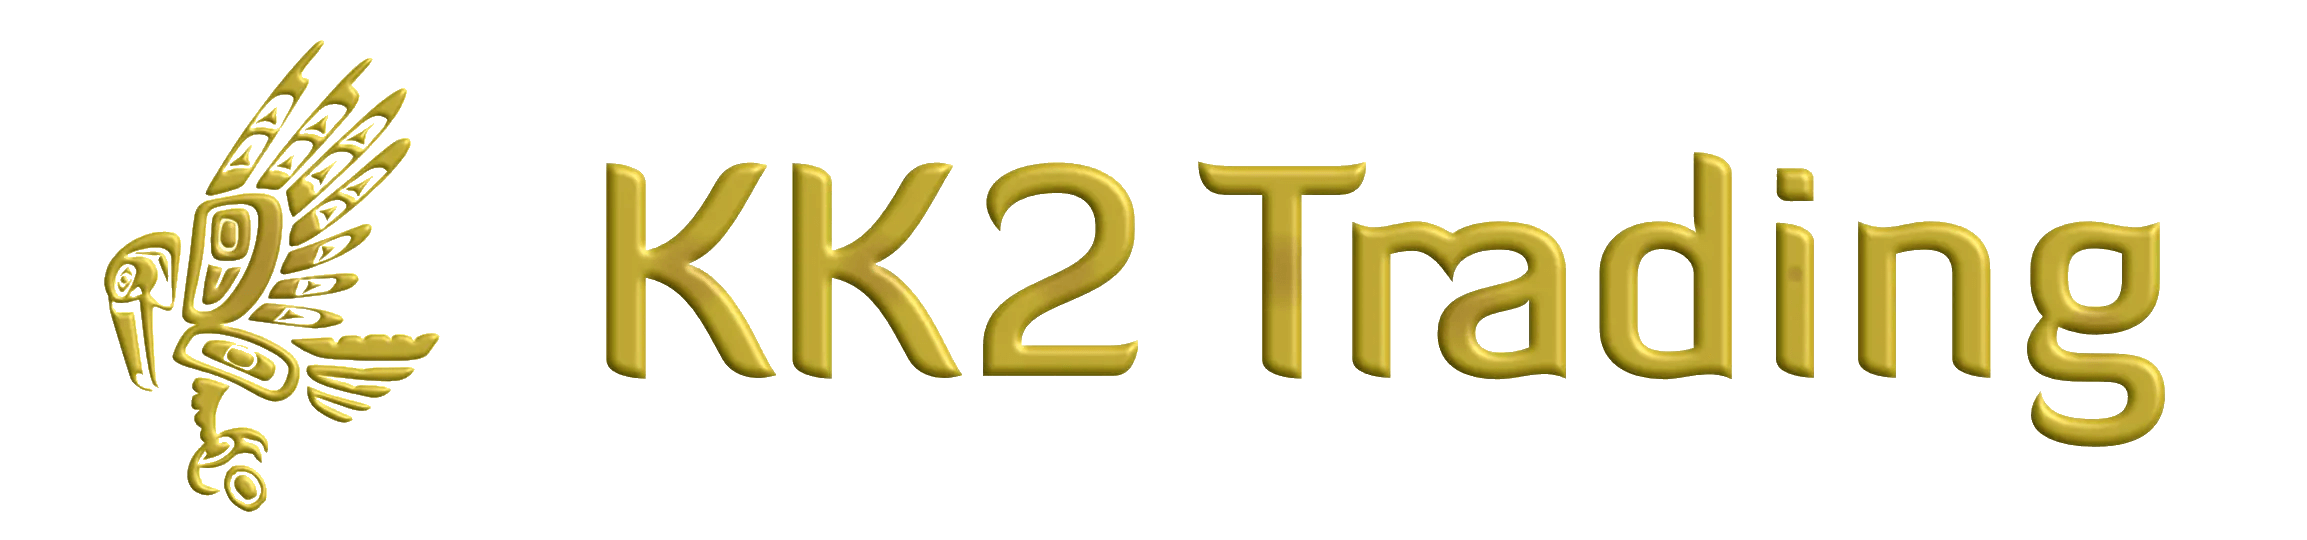 Kk2 trading - Support Ticket System